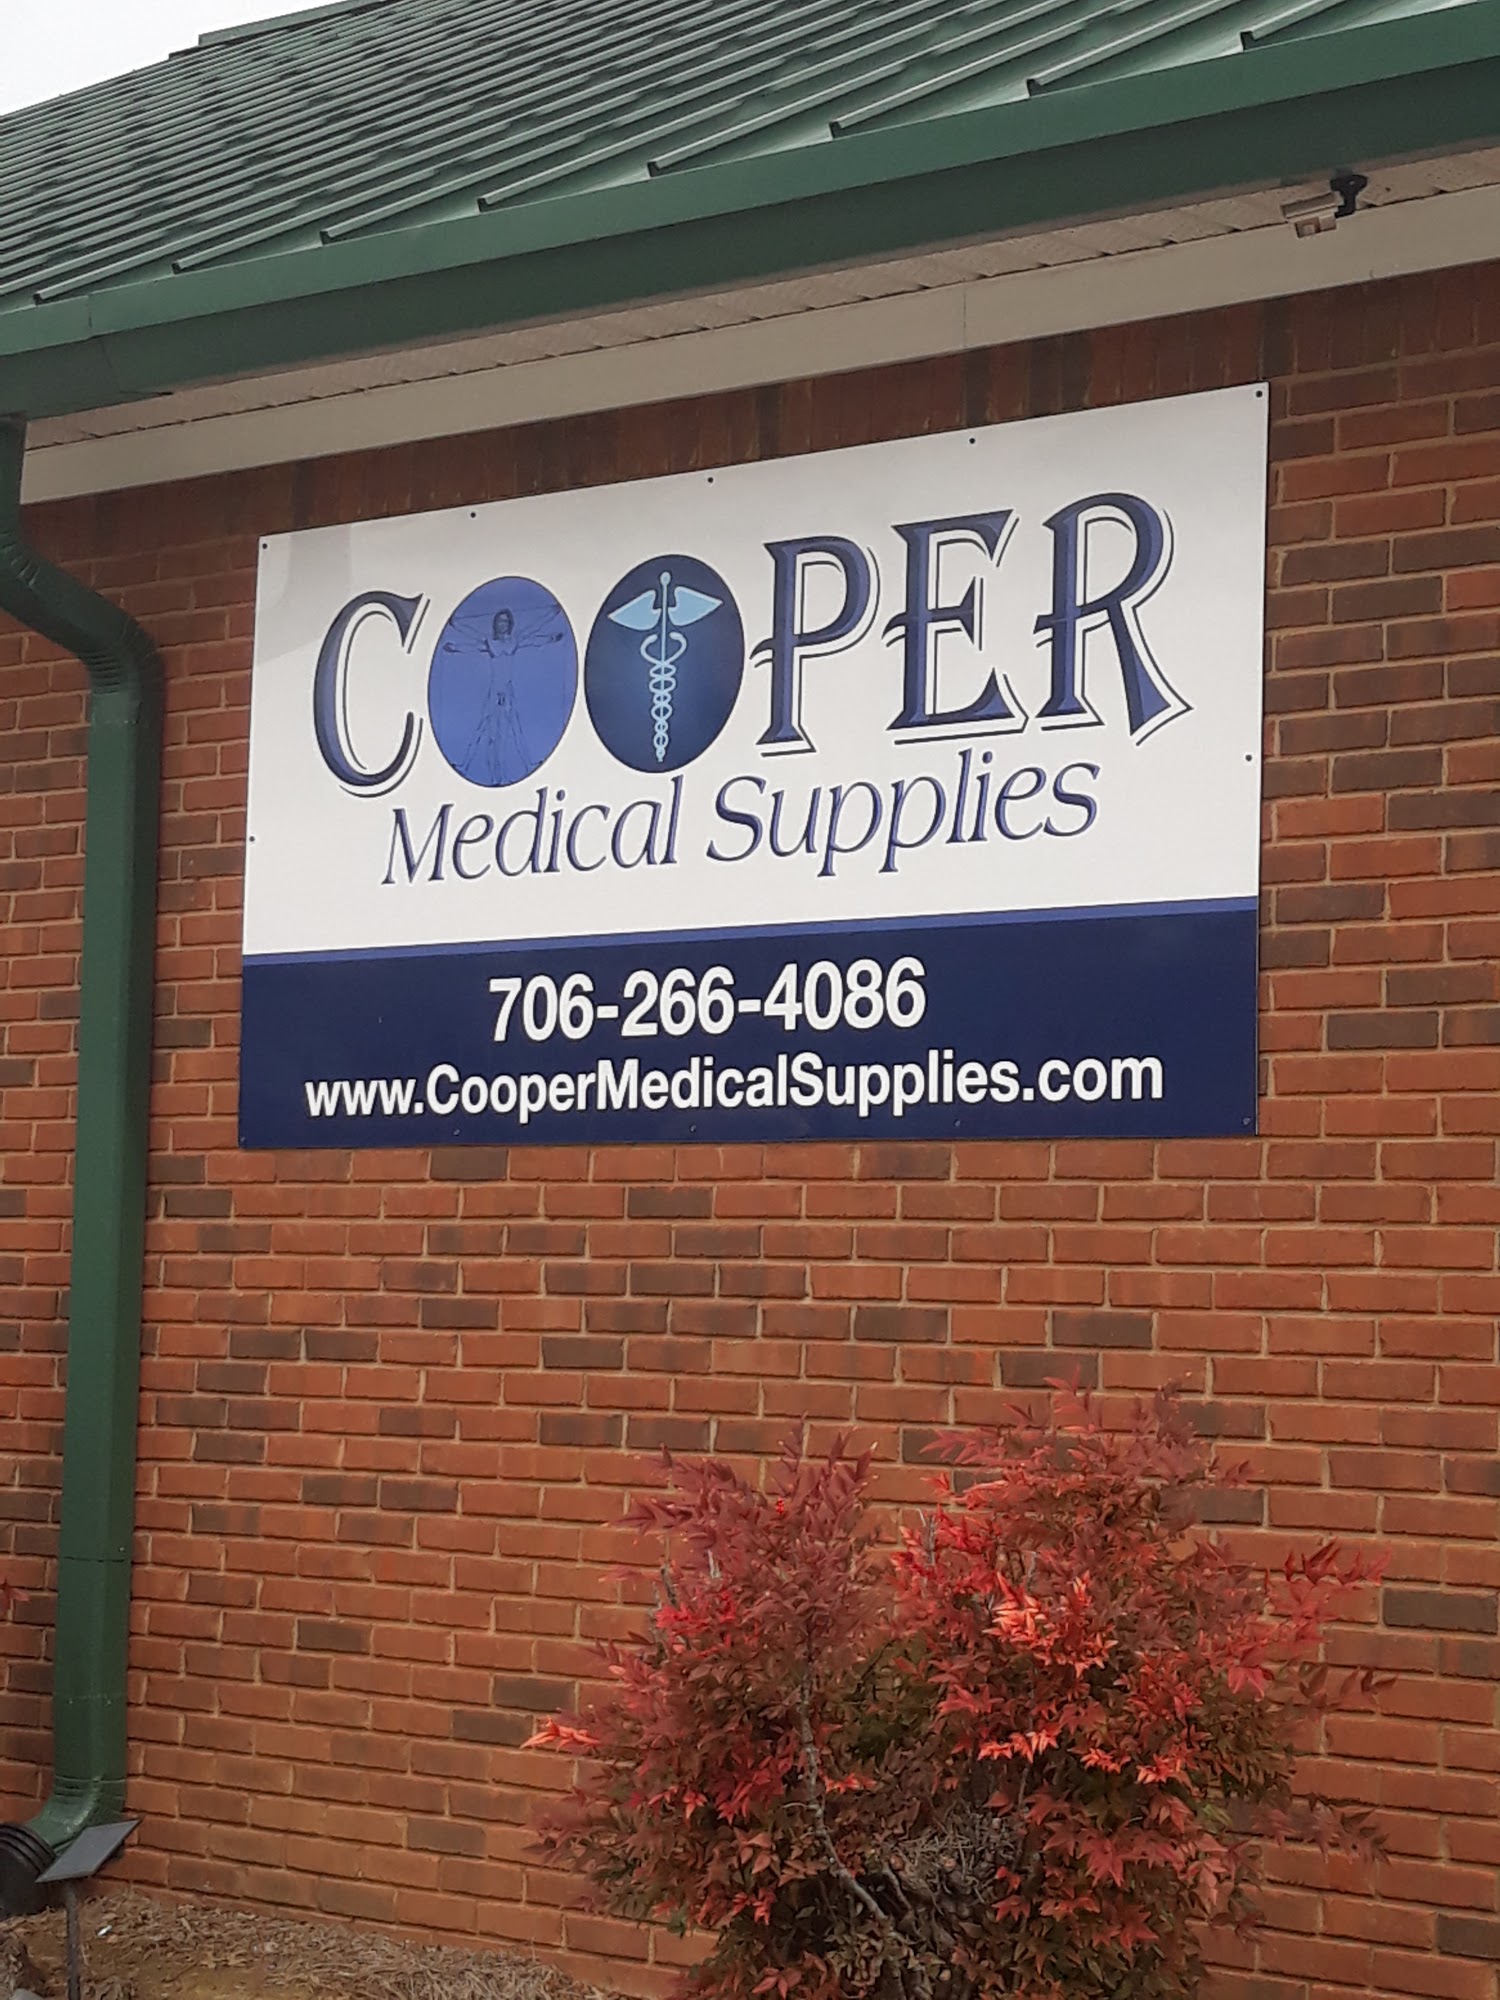 Cooper Medical